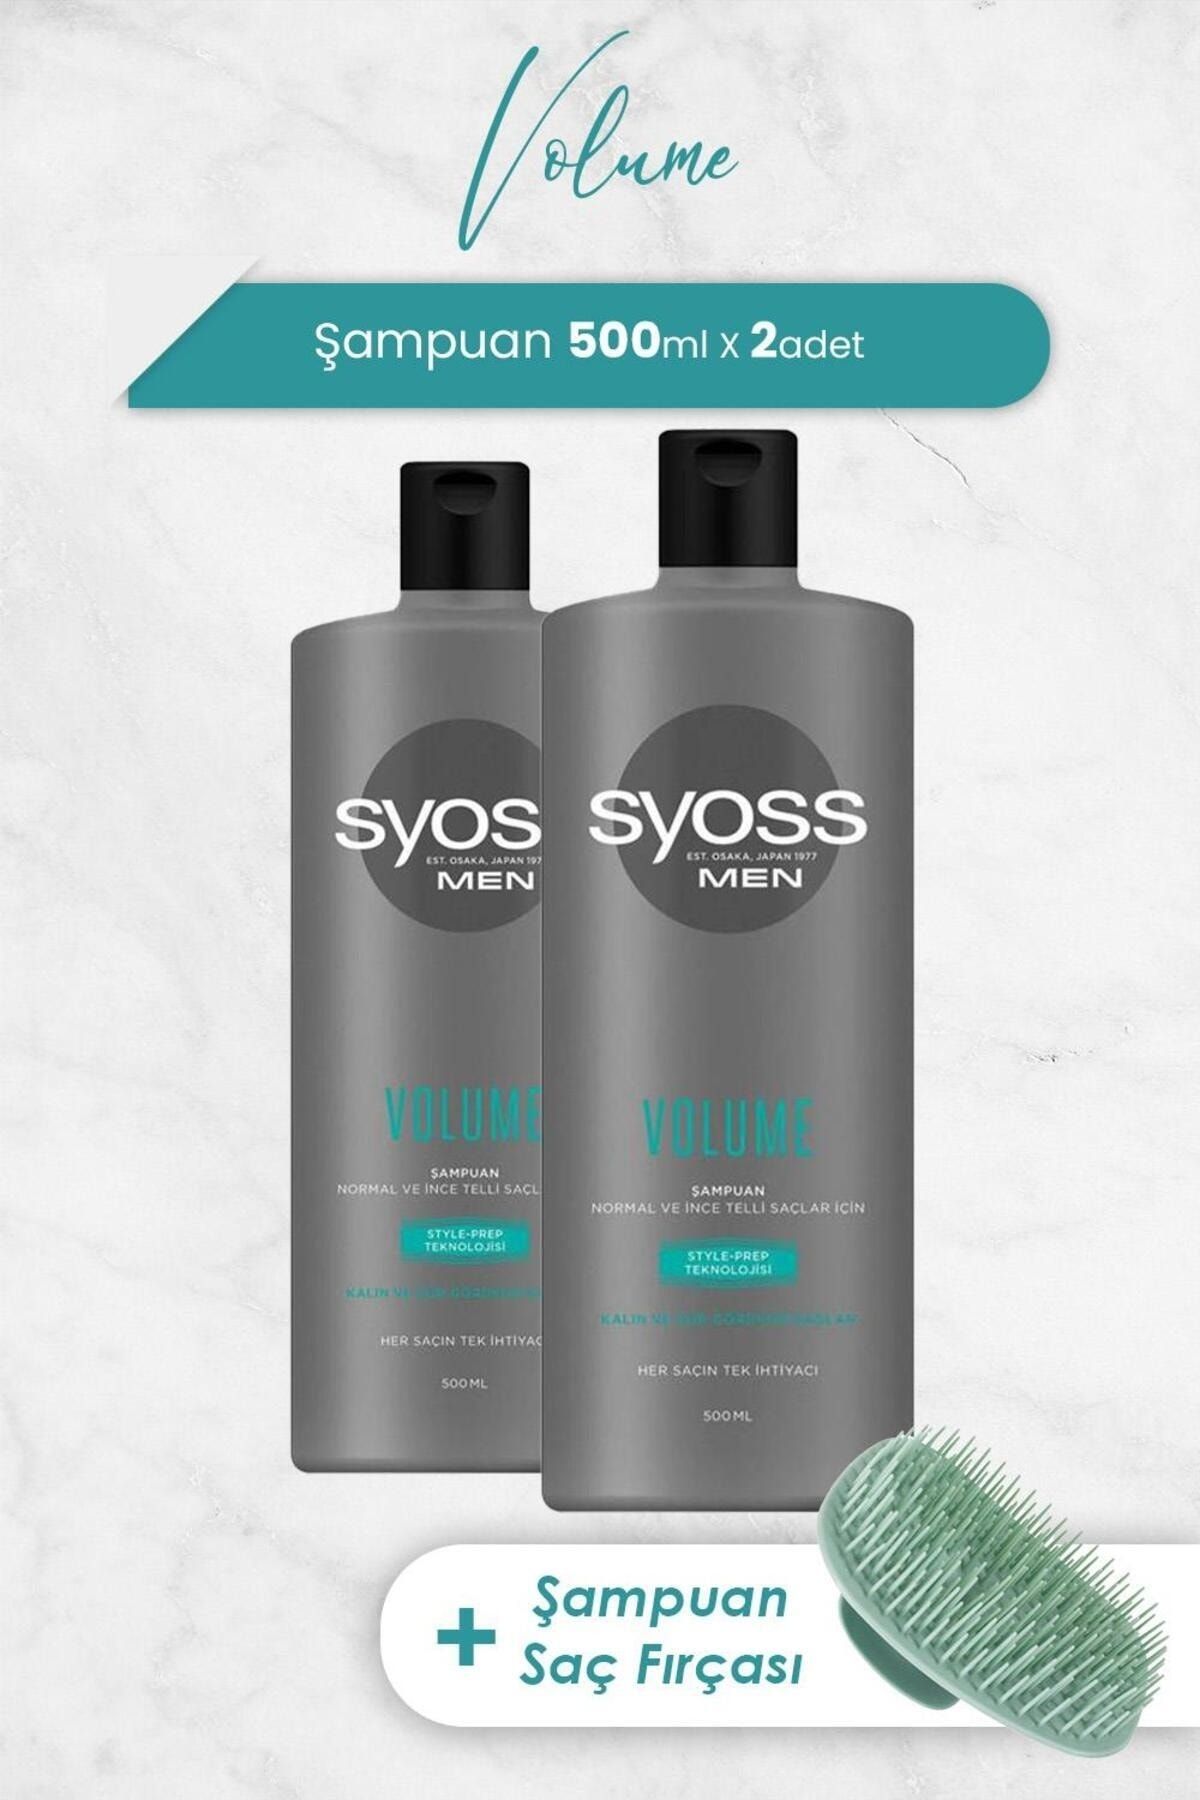 Syoss Men Volume Şampuan 500 ml x 2 Adet ve Şampuan Fırçası